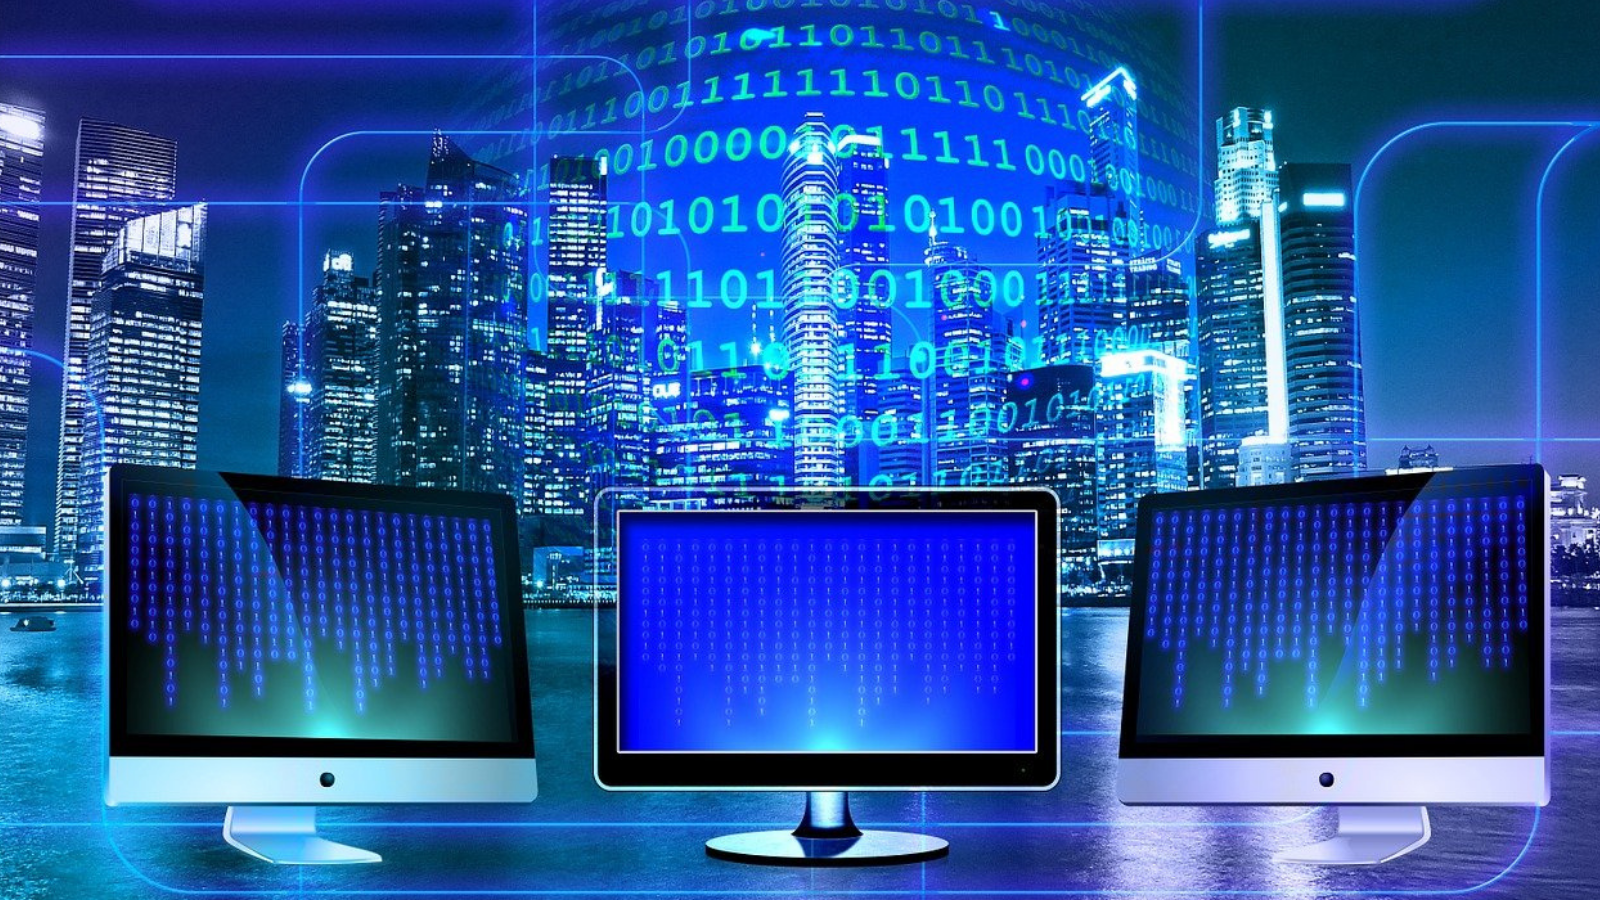 Creatividad con símbolos digitales, como pantallas de ordenador y lenguaje binario. Fondo azul oscuro, con un perfil de una ciudad